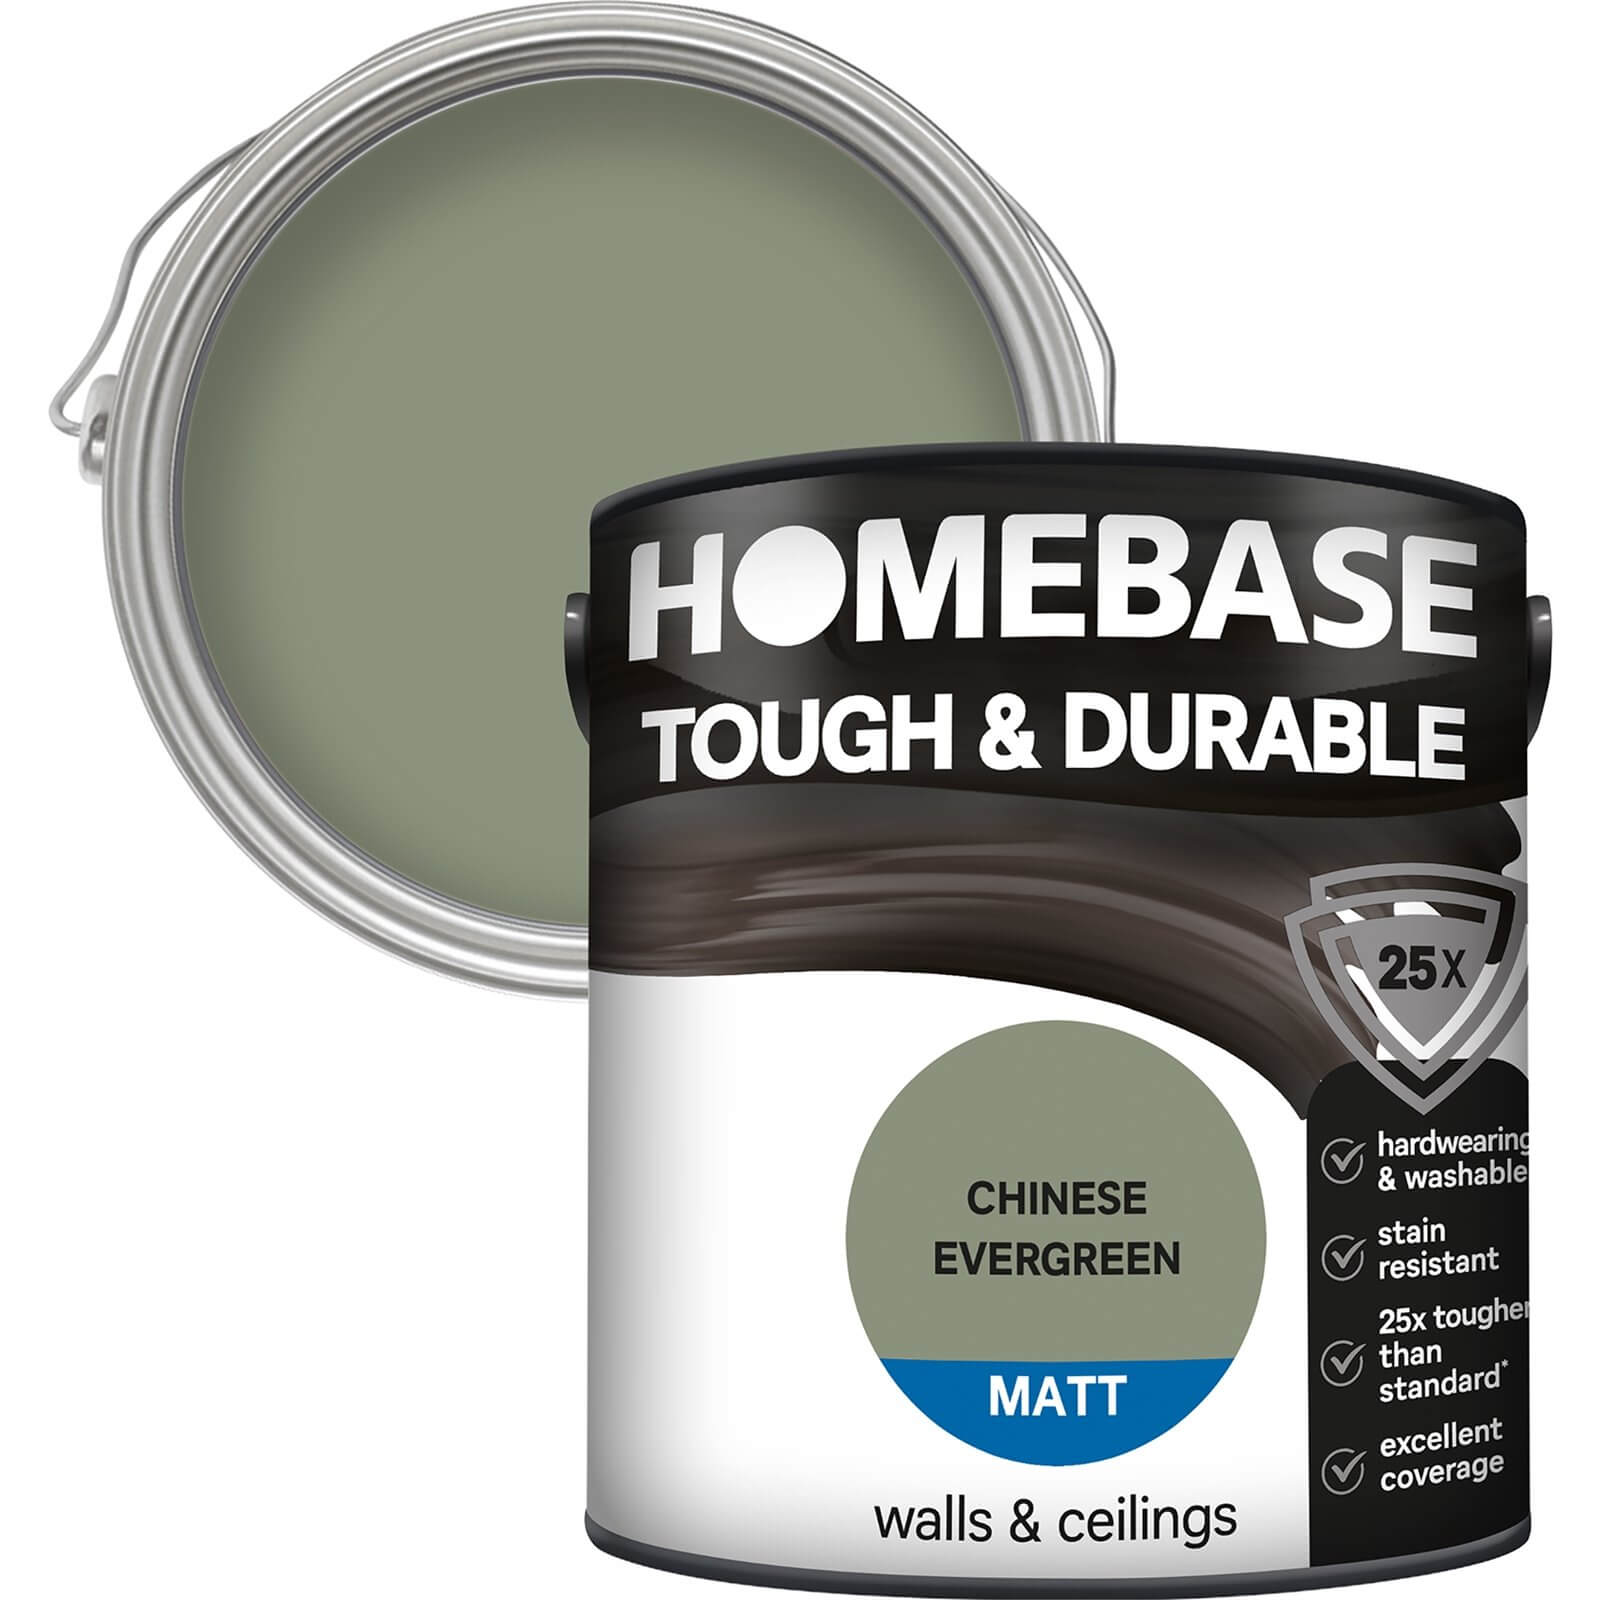 Homebase Tough & Durable Matt Paint Chinese Evergreen - 2.5L